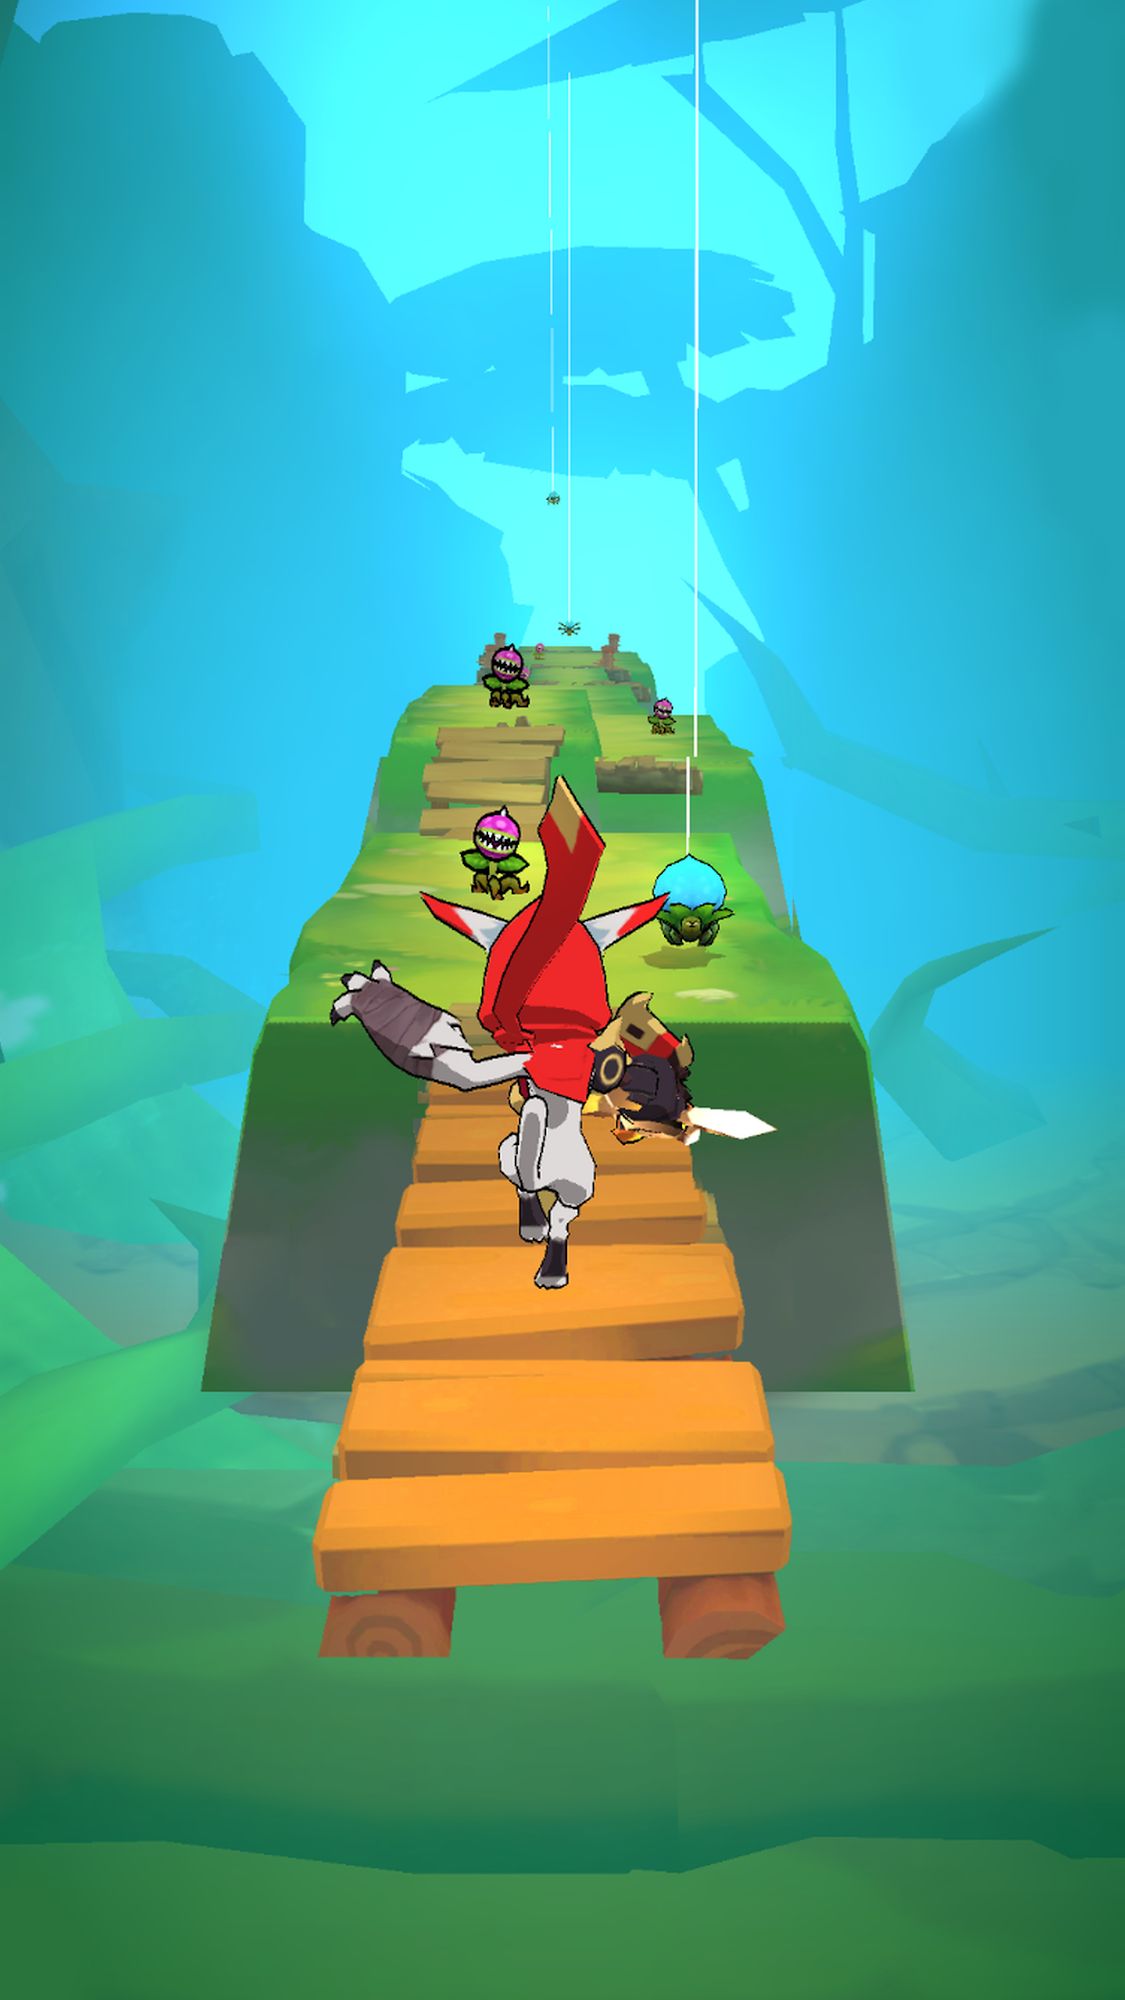 Unicorn Dash Run jogo de cavalos versão móvel andróide iOS apk baixar  gratuitamente-TapTap